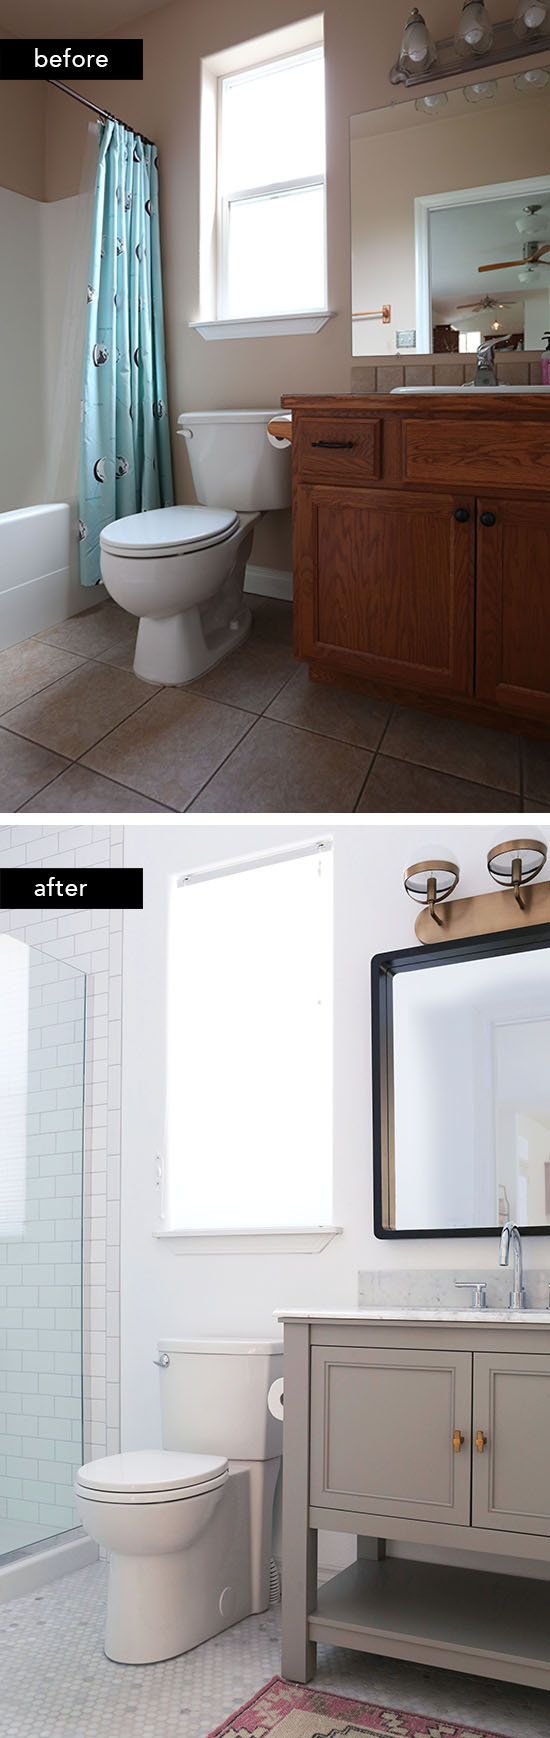 Budget-friendly bathroom remodel